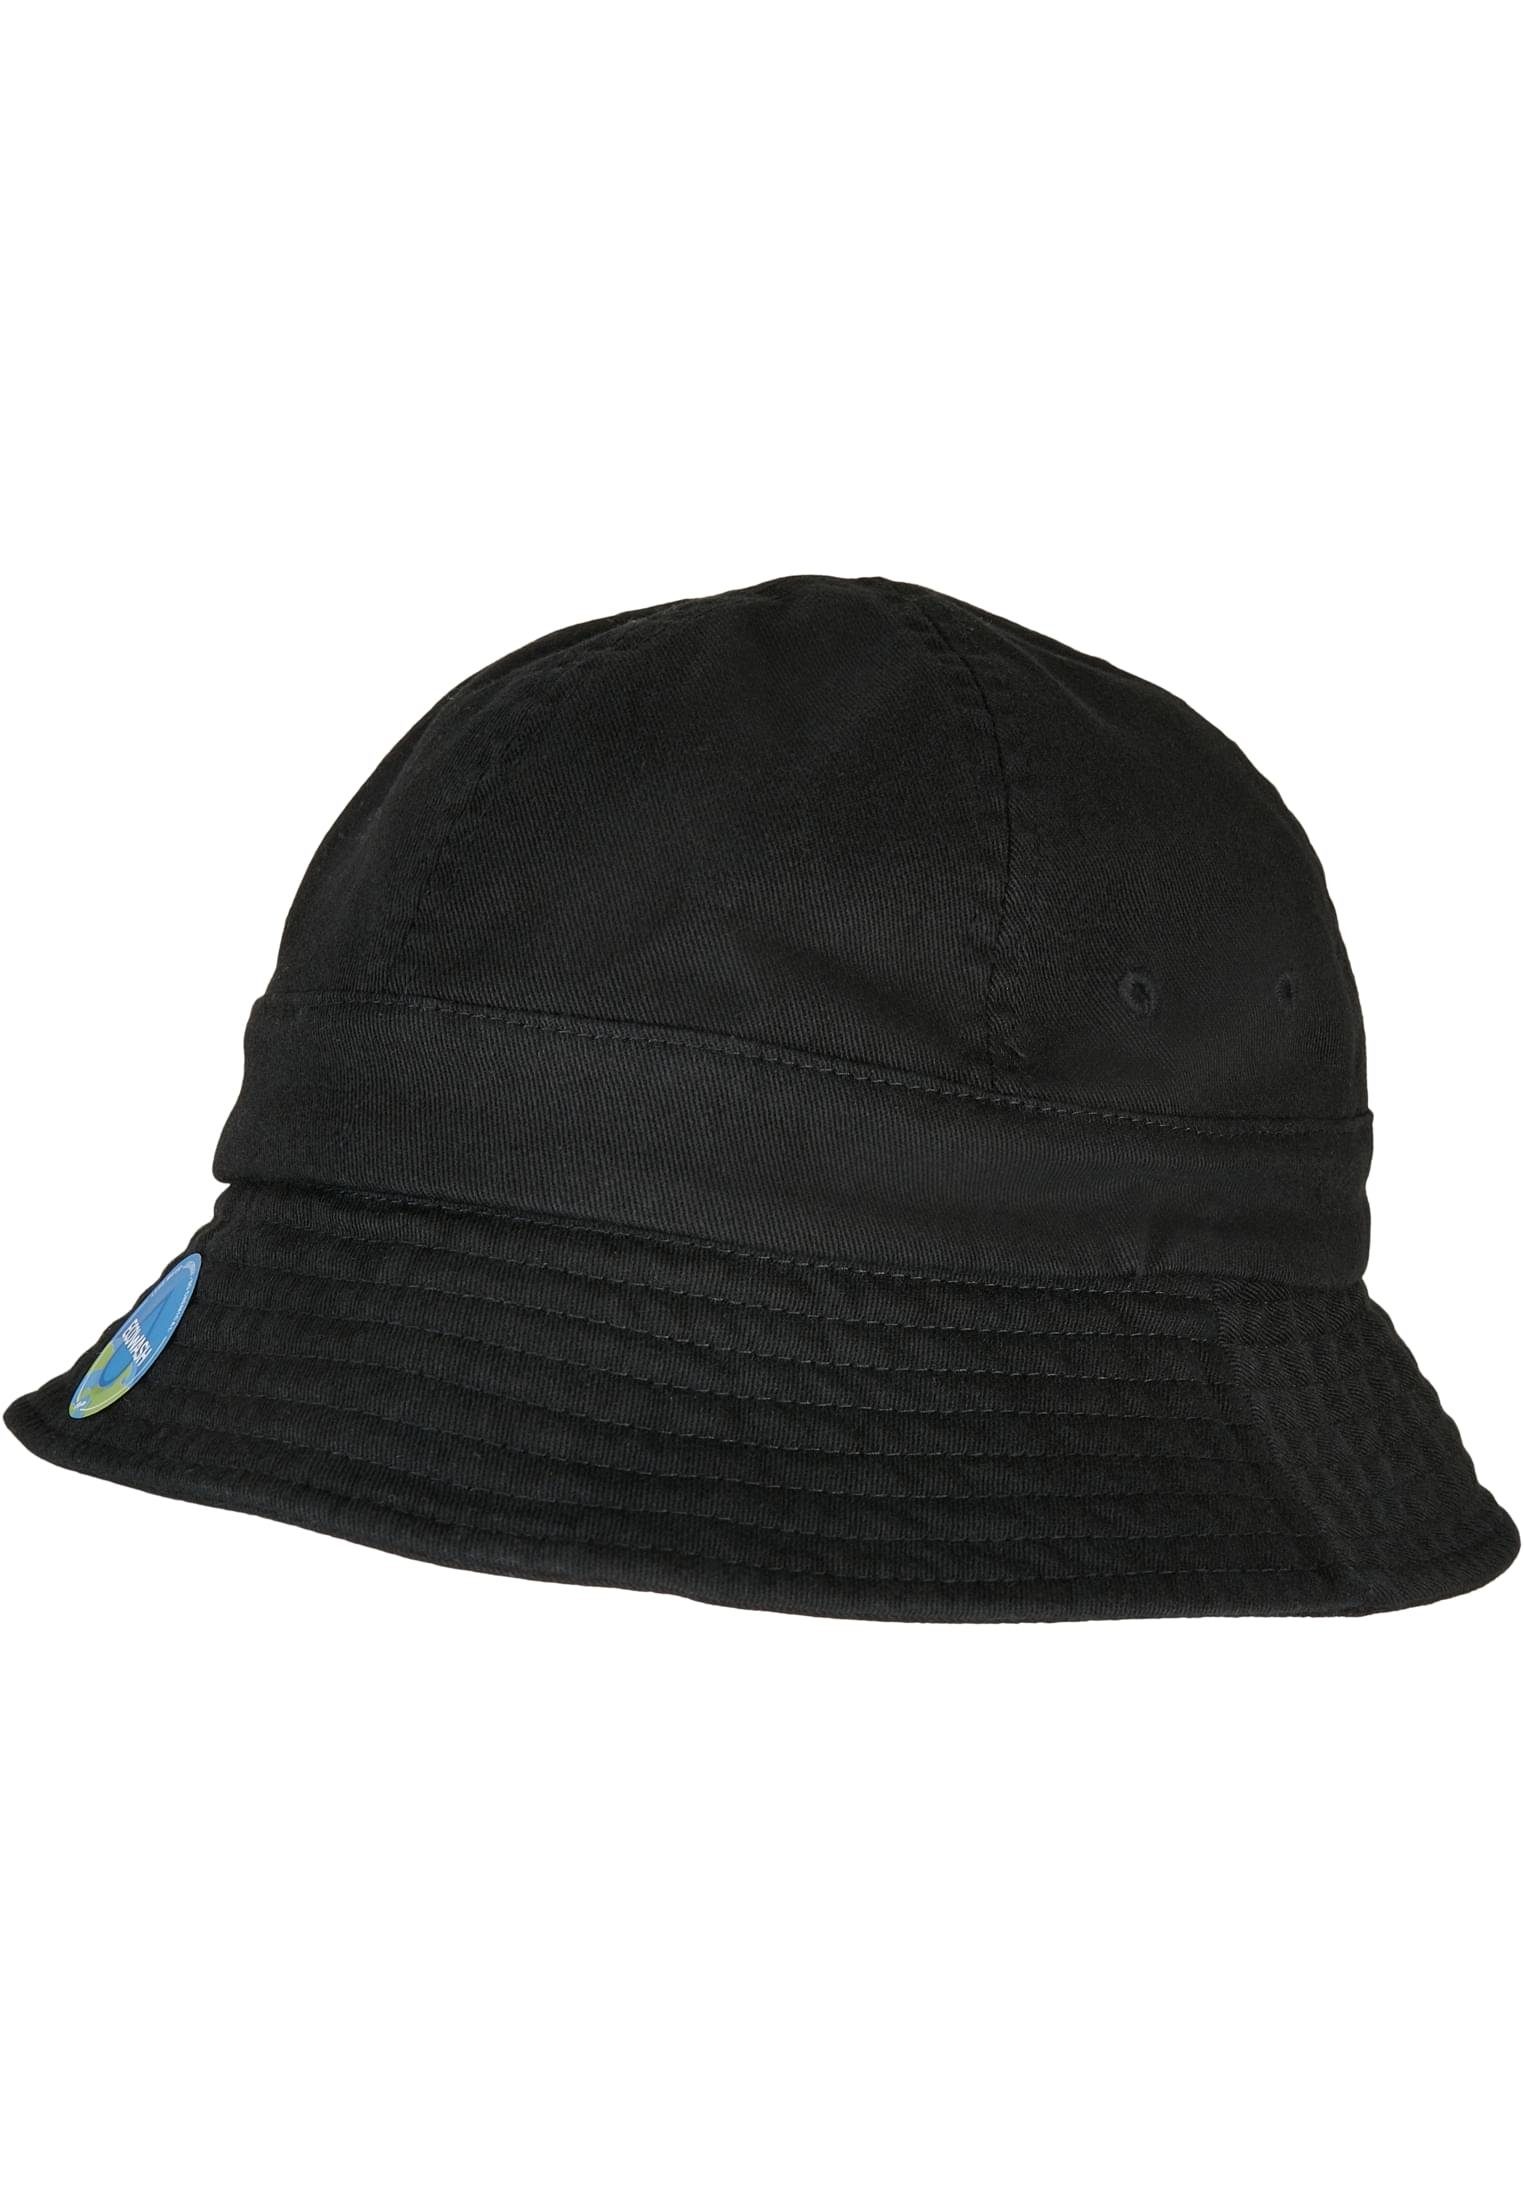 Notop Eco Flexfit Flexfit Hat black Flex Accessoires Cap Washing Tennis